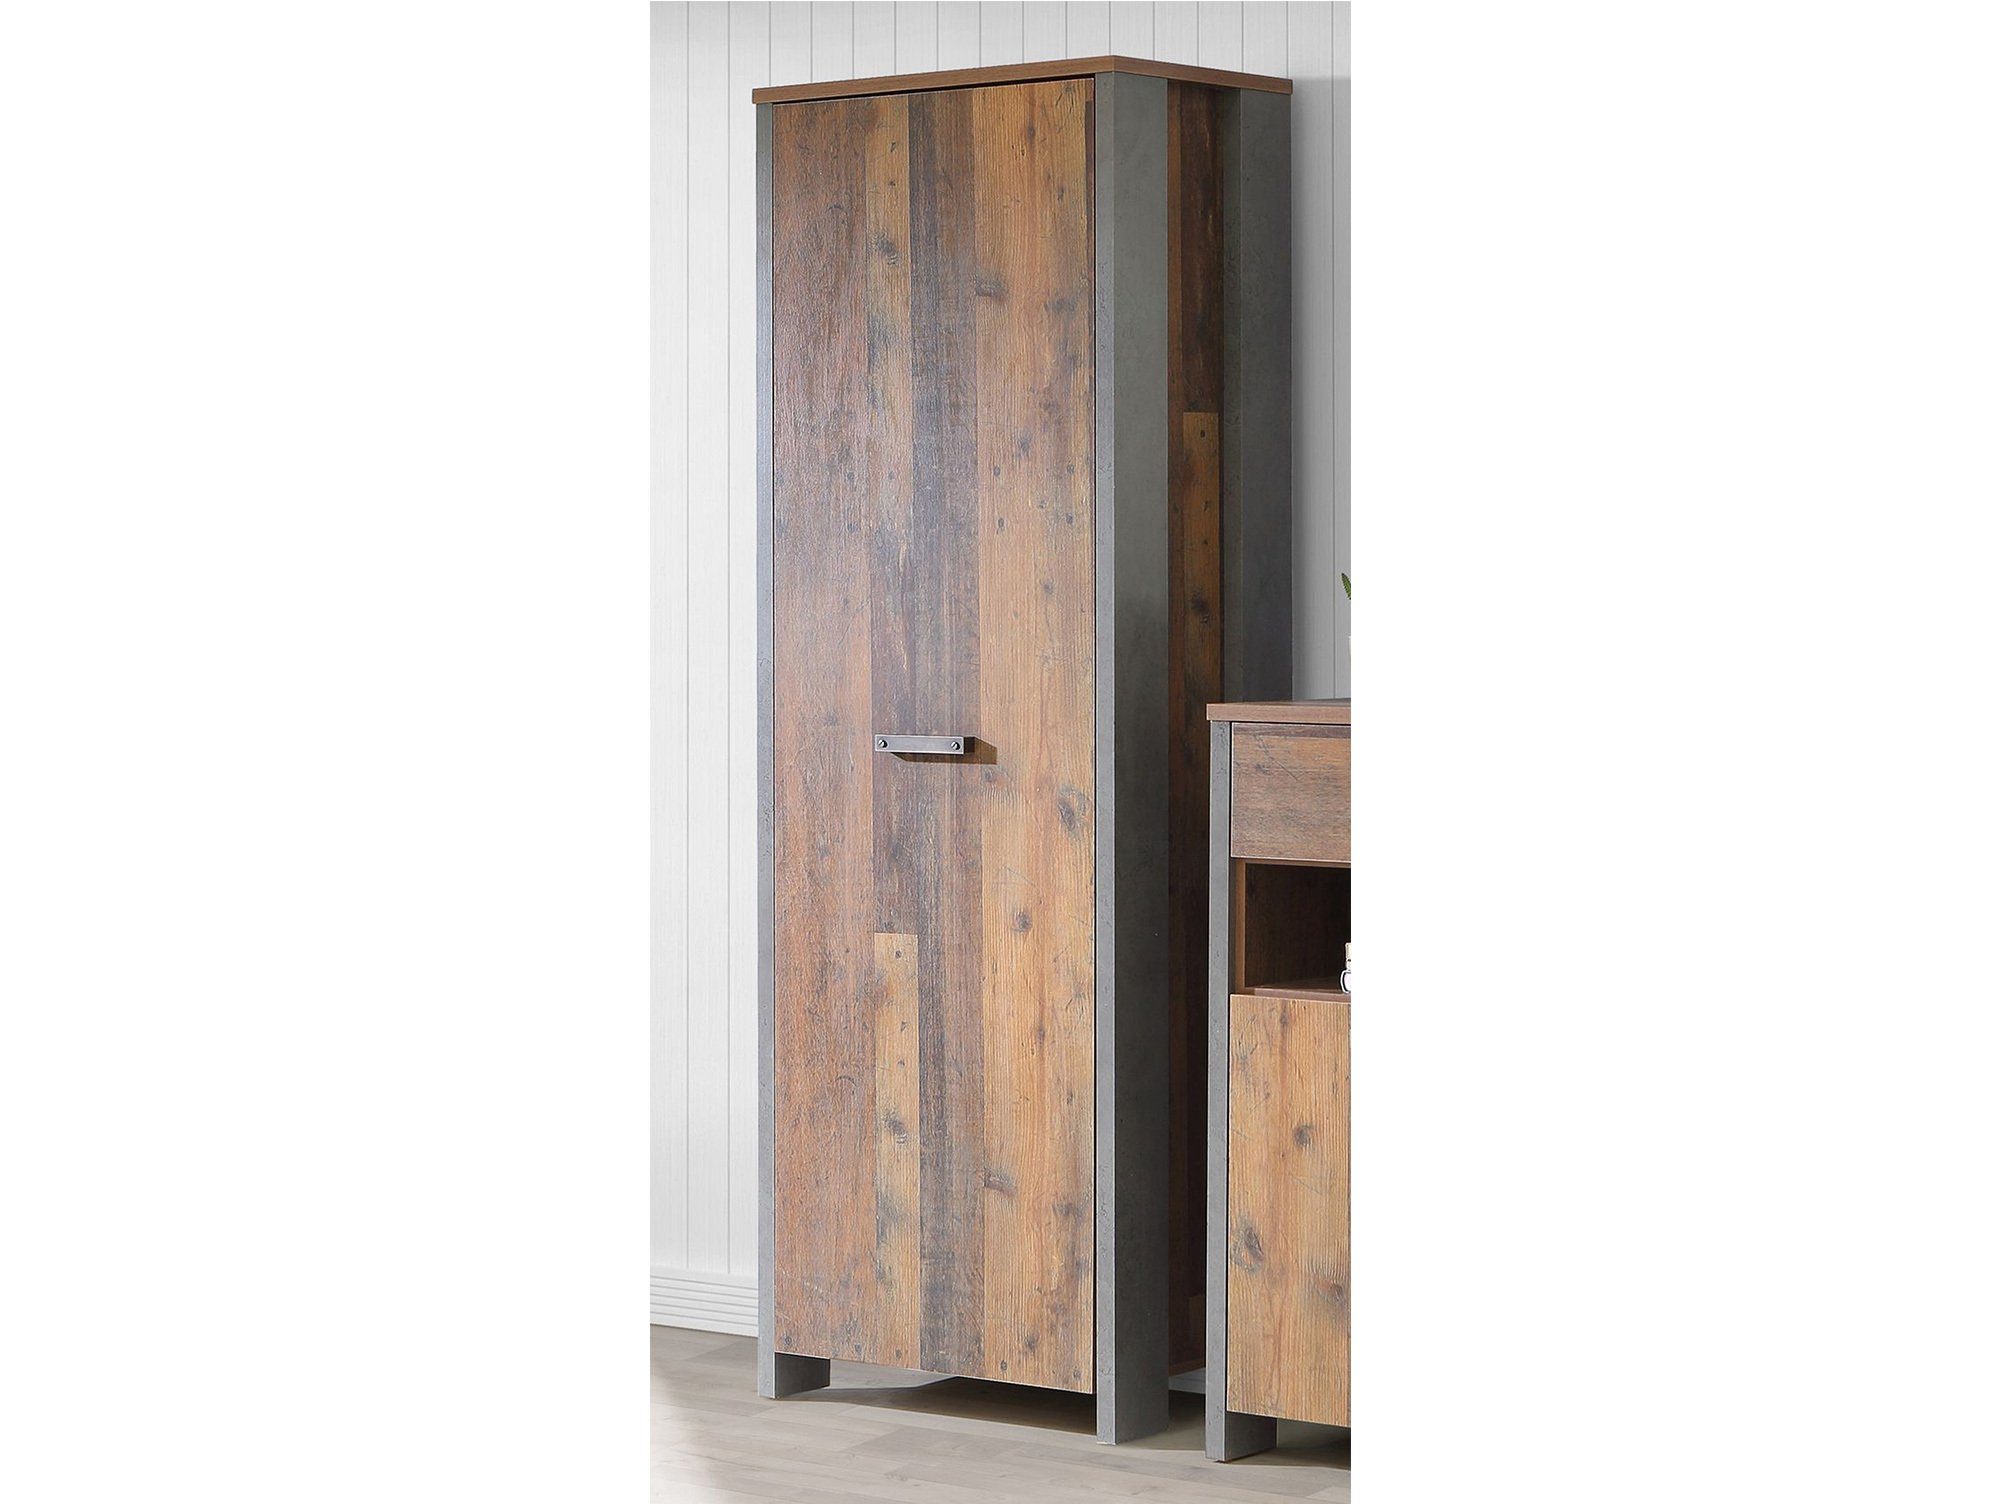 Moebel-Eins Garderobenschrank CASSIA Garderobenschrank mit Tür, 1 Material Wood Vintage/betonfarbig Old Dekorspanplatte